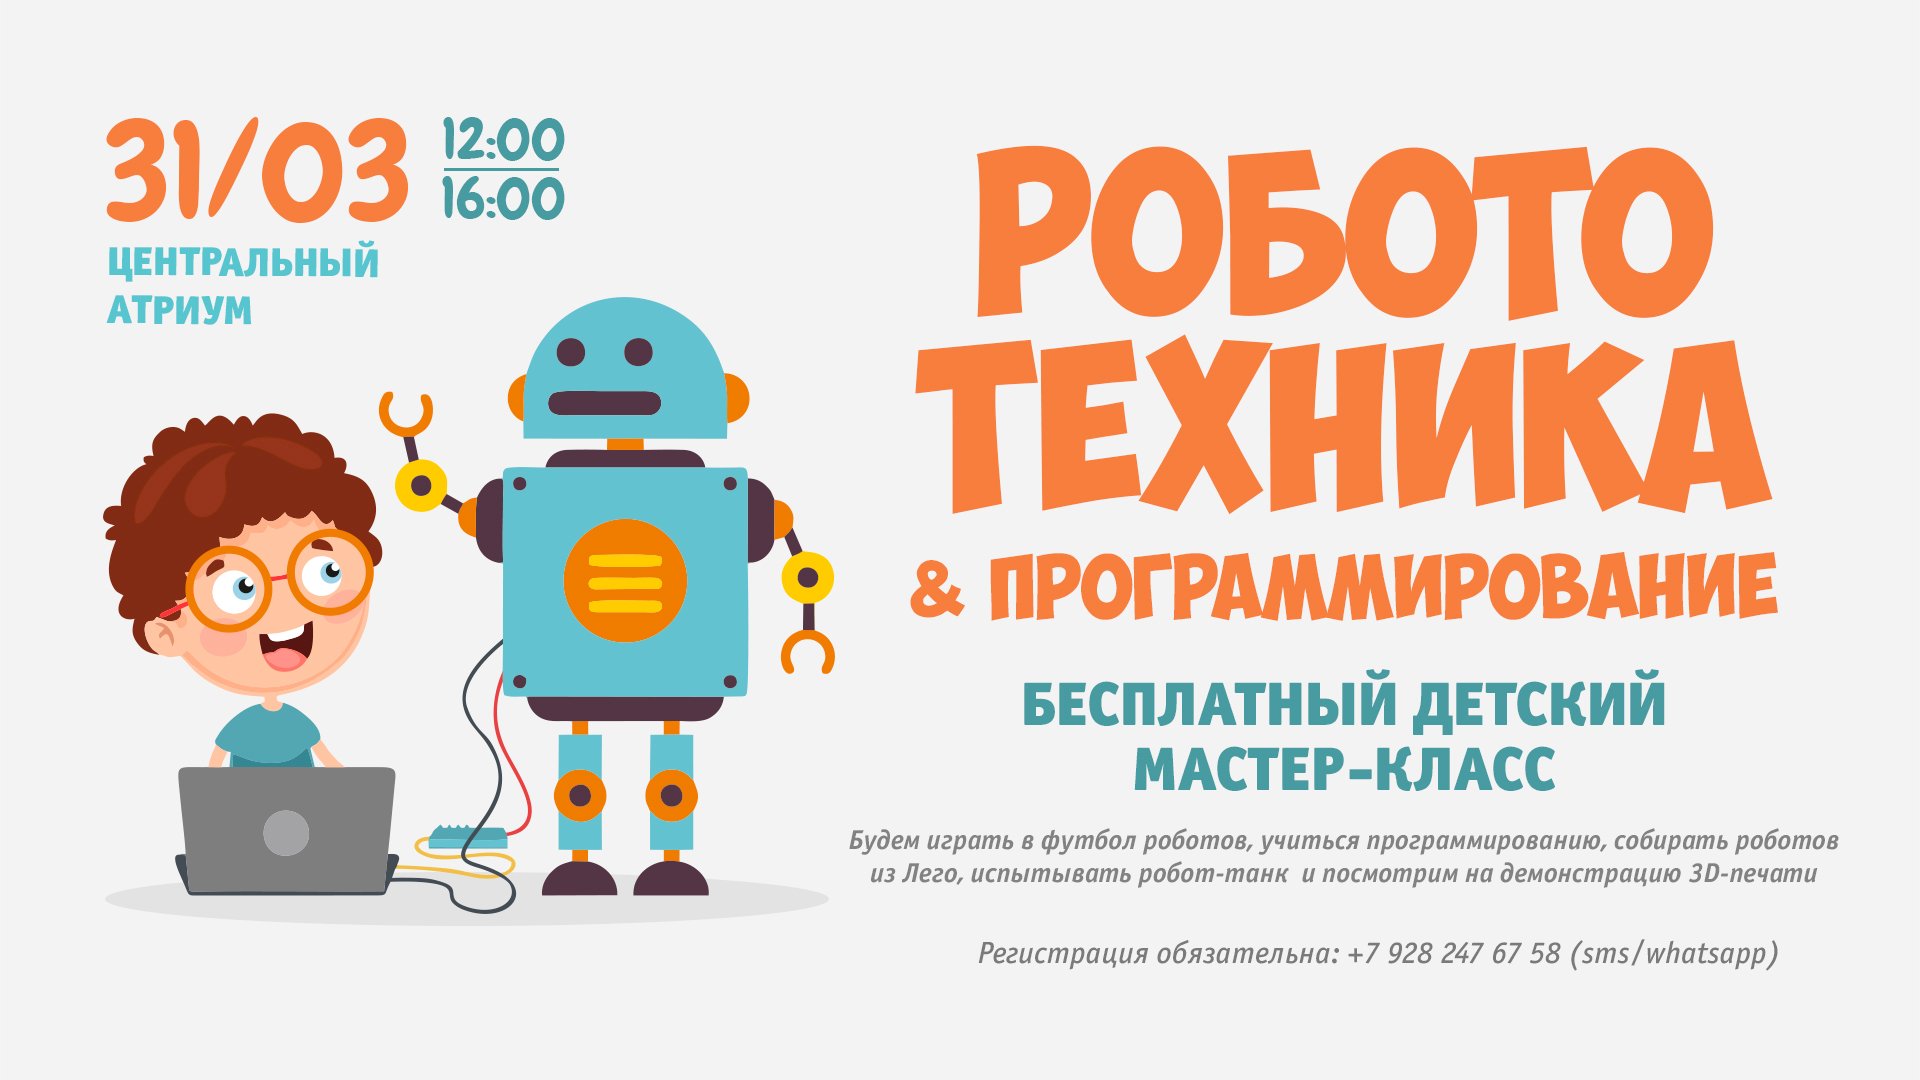 31.03 - Детский мастер-класс по программированию и робототехнике!